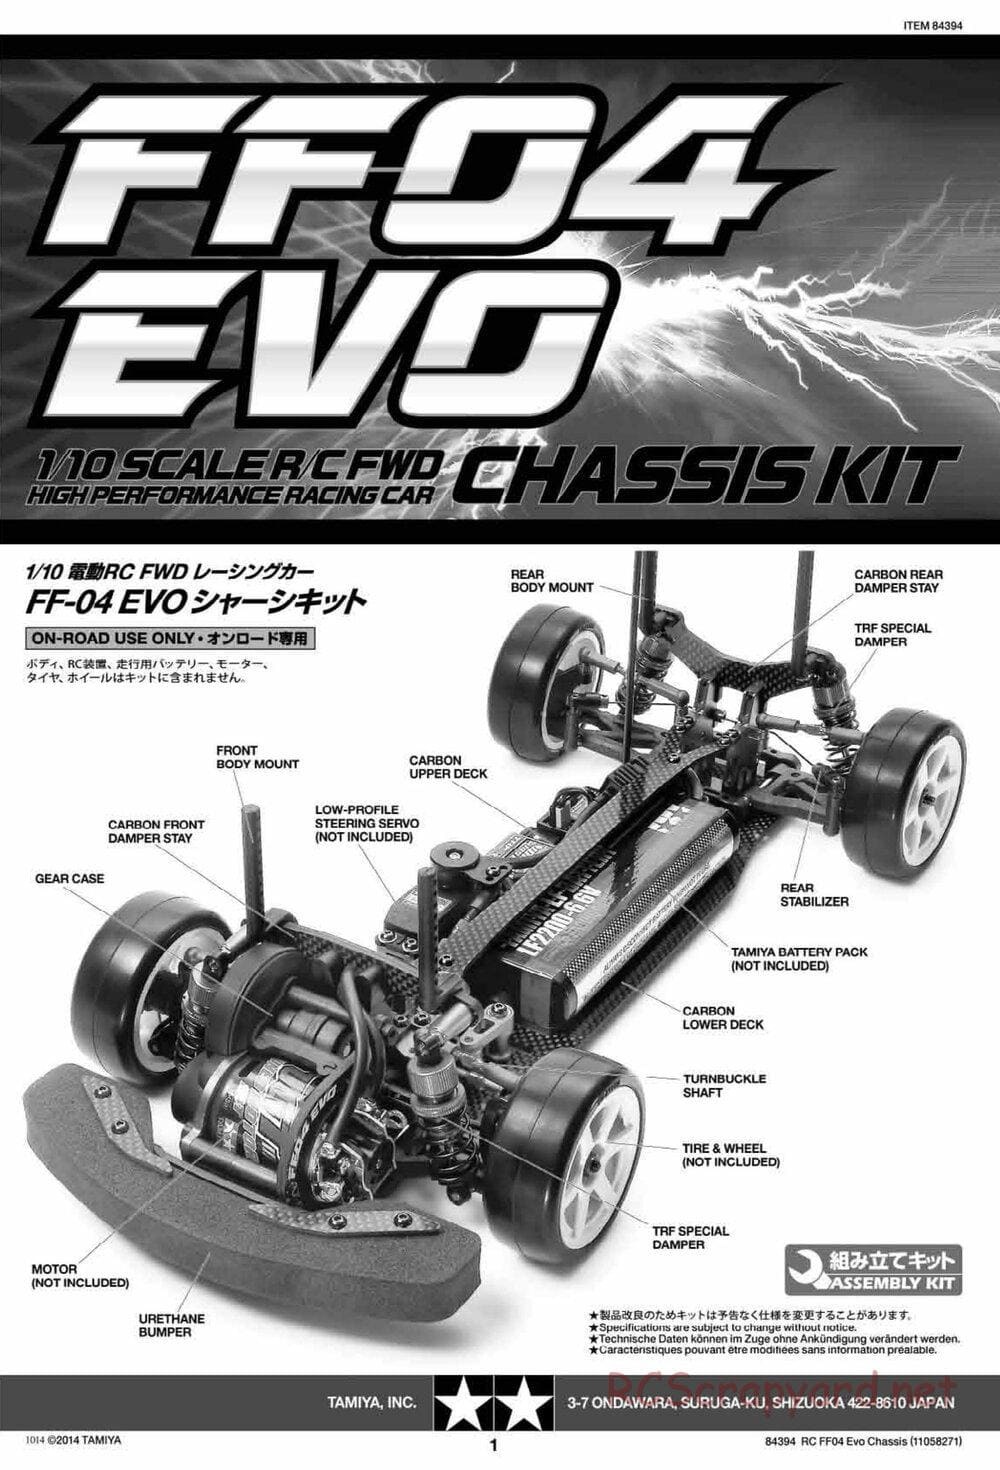 Tamiya - FF-04 Evo Chassis - Manual - Page 1